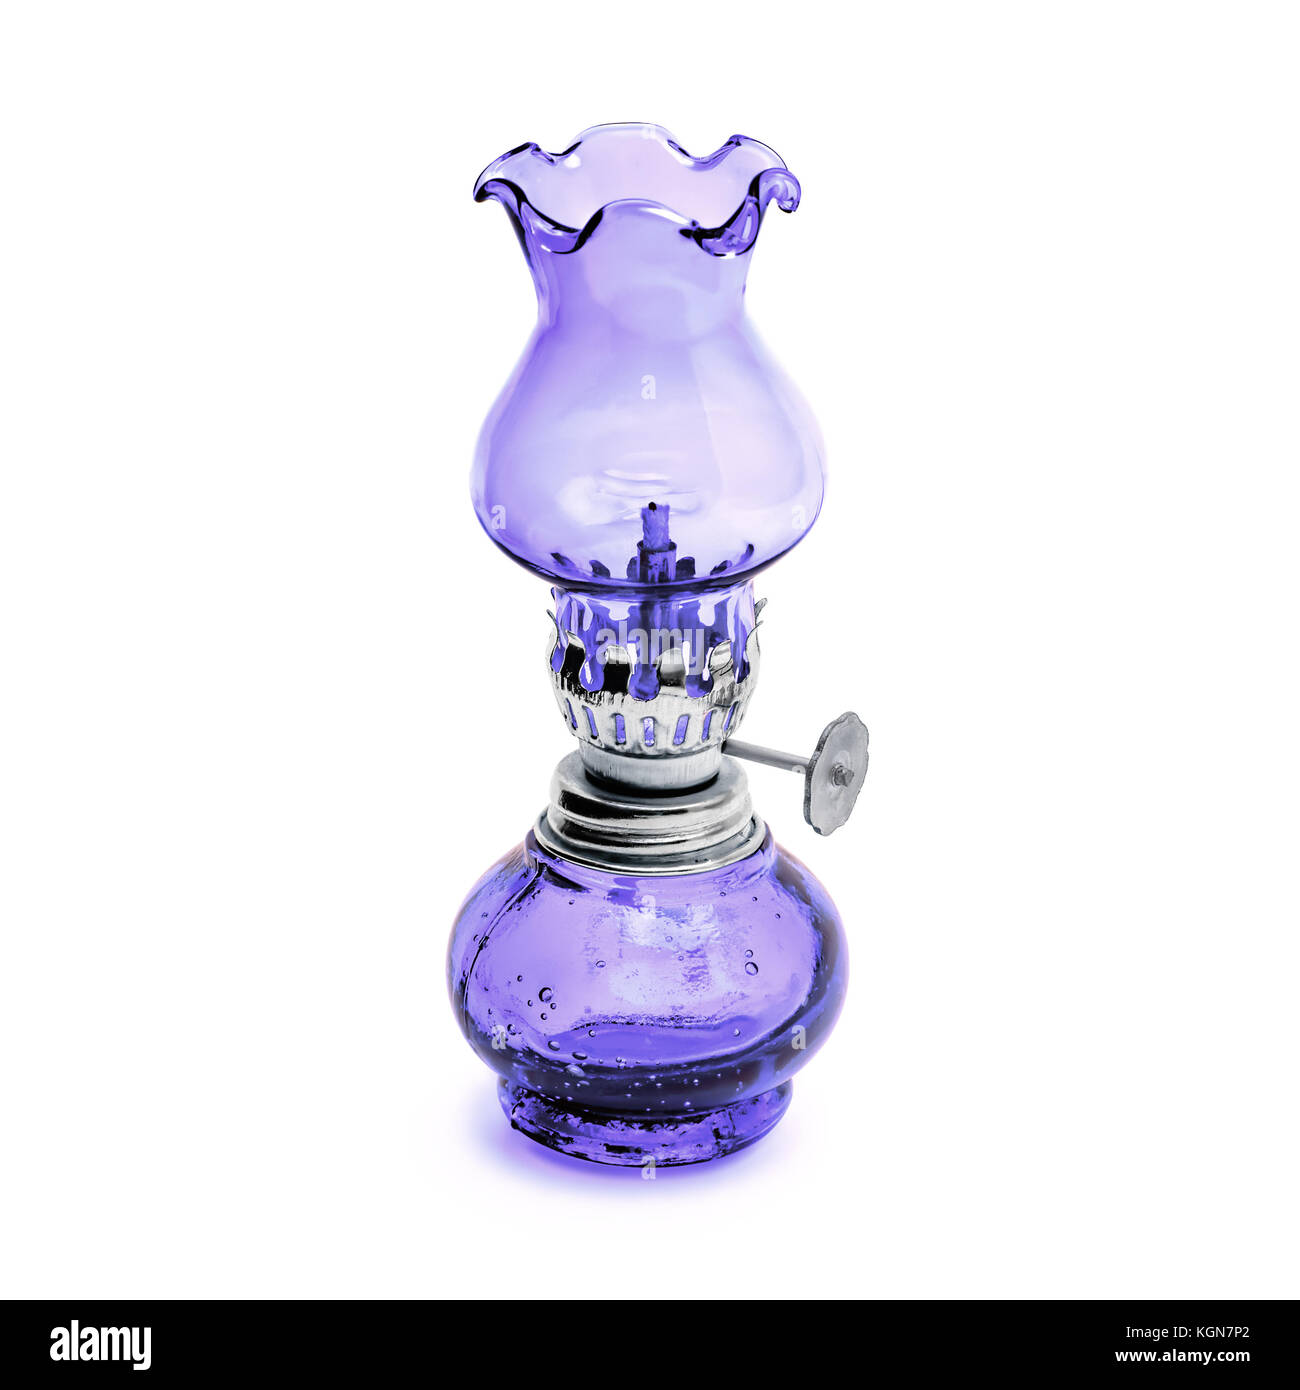 Mèche pour lampe à huile de lanterne de verre violet et métal isolé sur fond blanc Banque D'Images